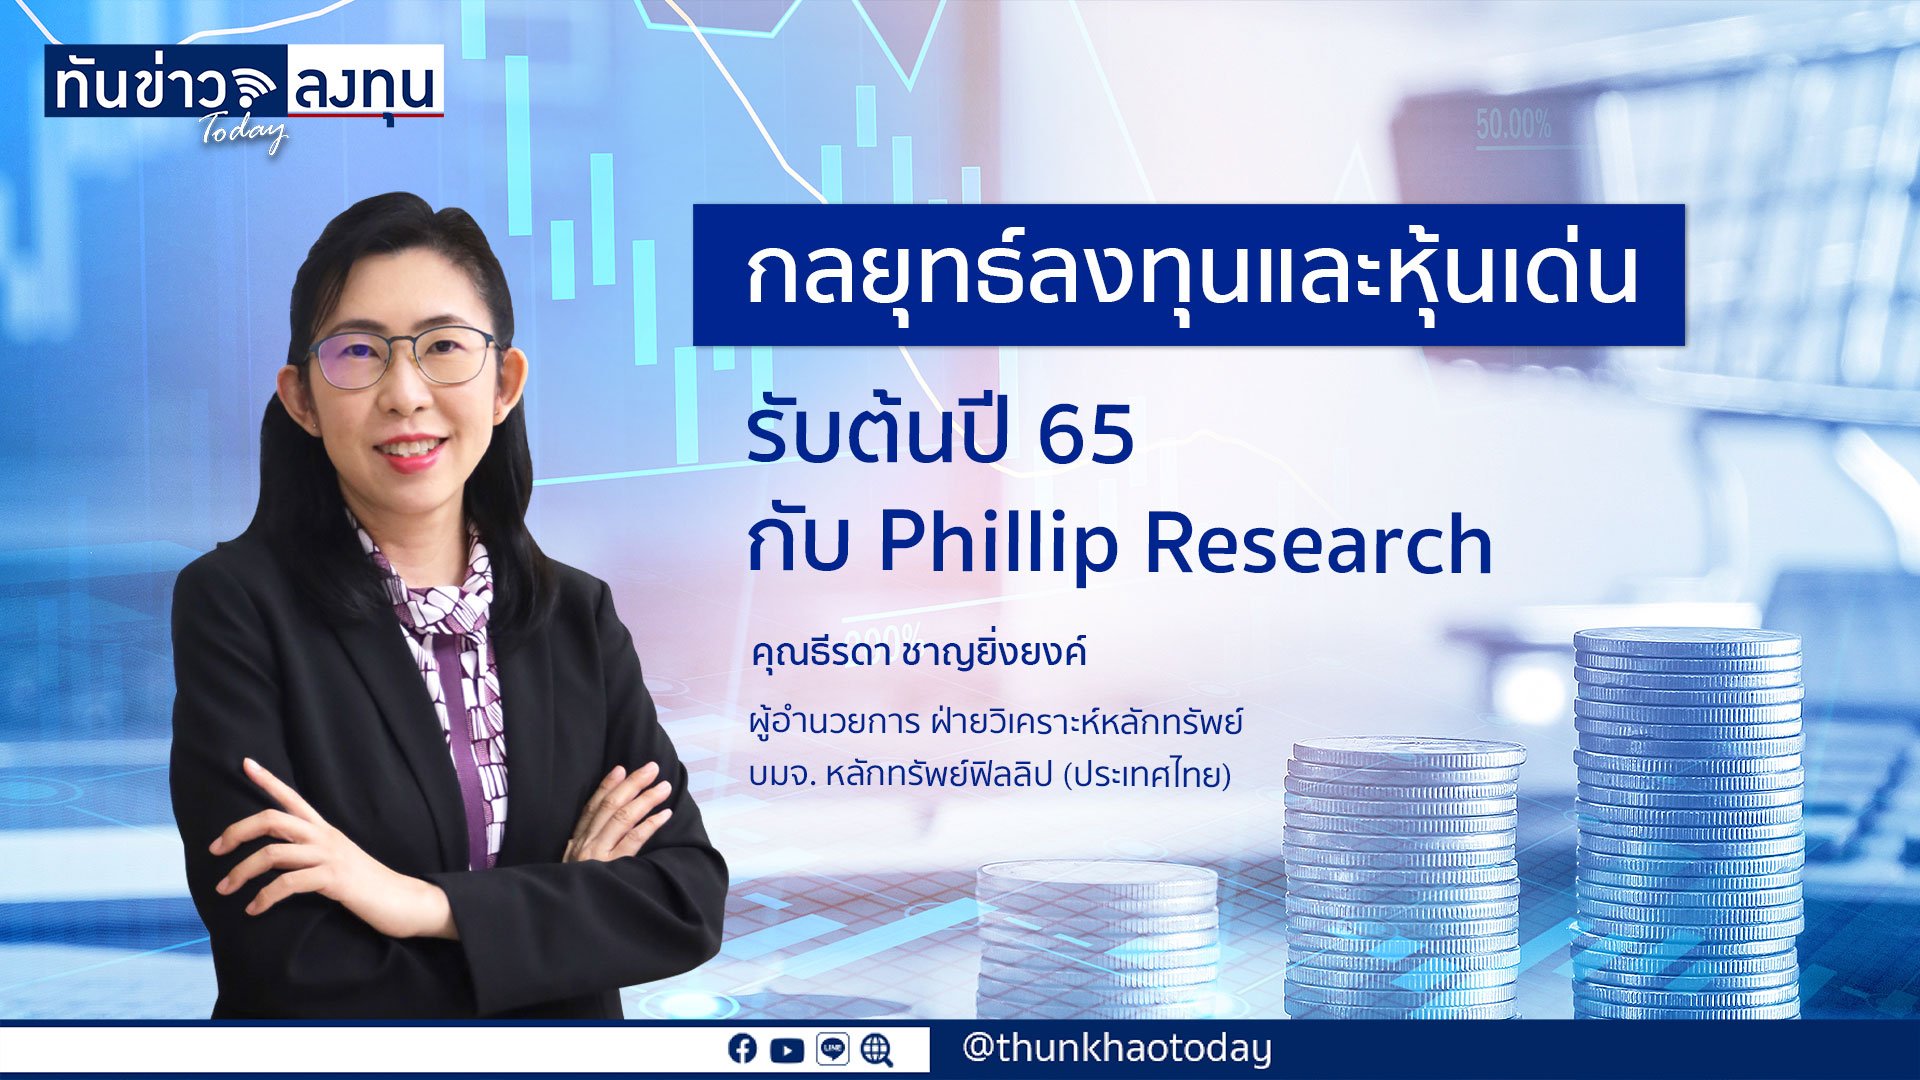 Phillip Research ชี้เป้าหุ้นเด่นรับปี 2565 พร้อมแนะกลยุทธ์ลงทุนอย่างไรให้เข้ากับสภาวะเศรษฐกิจในยุคโควิด-19